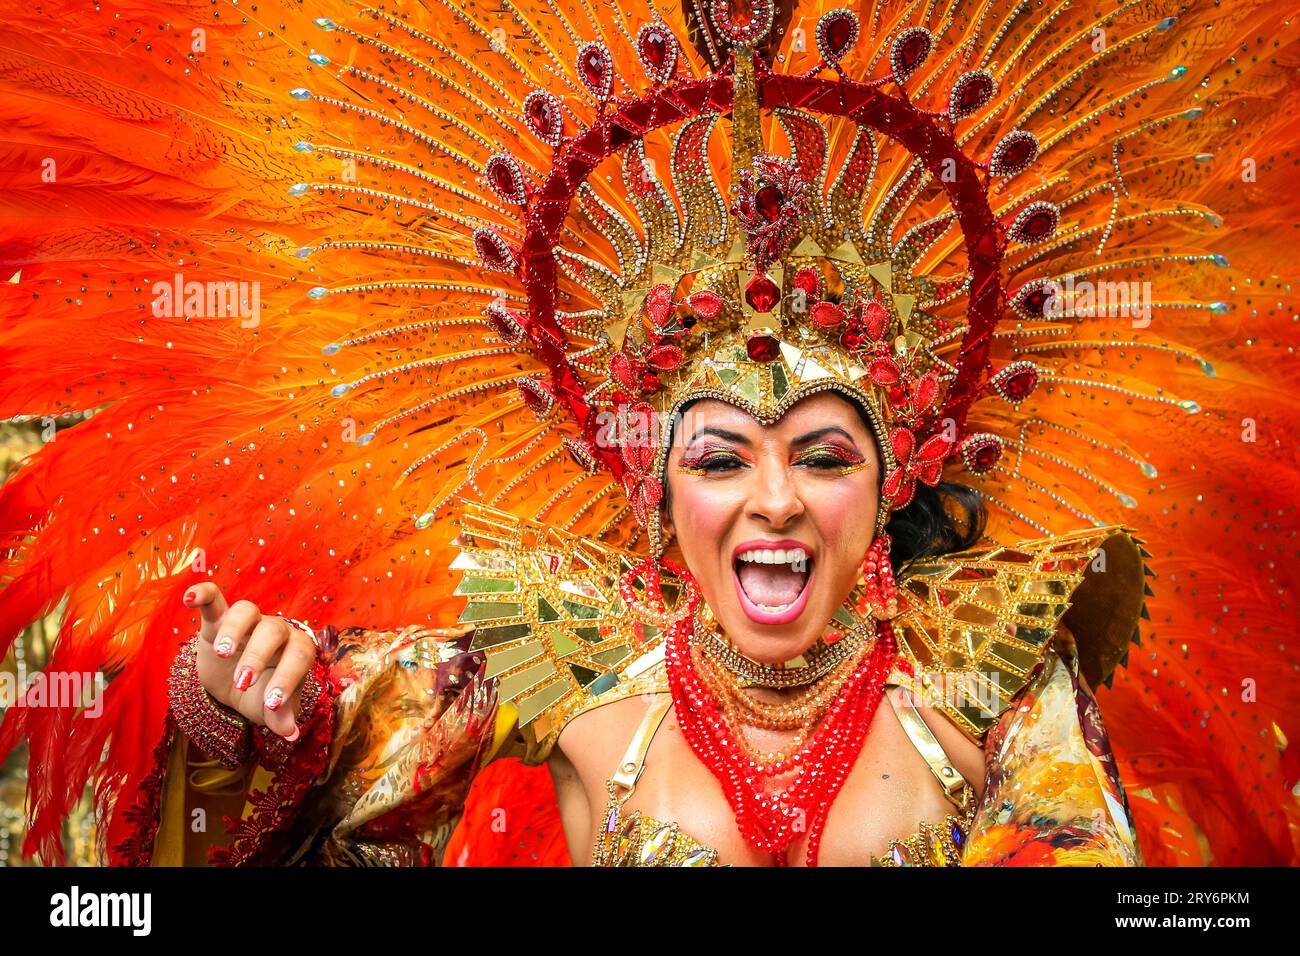 L'école Parasaiso de Samba en costumes colorés costumes dansent au Notting Hill Carnival Londres, Angleterre, Royaume-Uni Banque D'Images